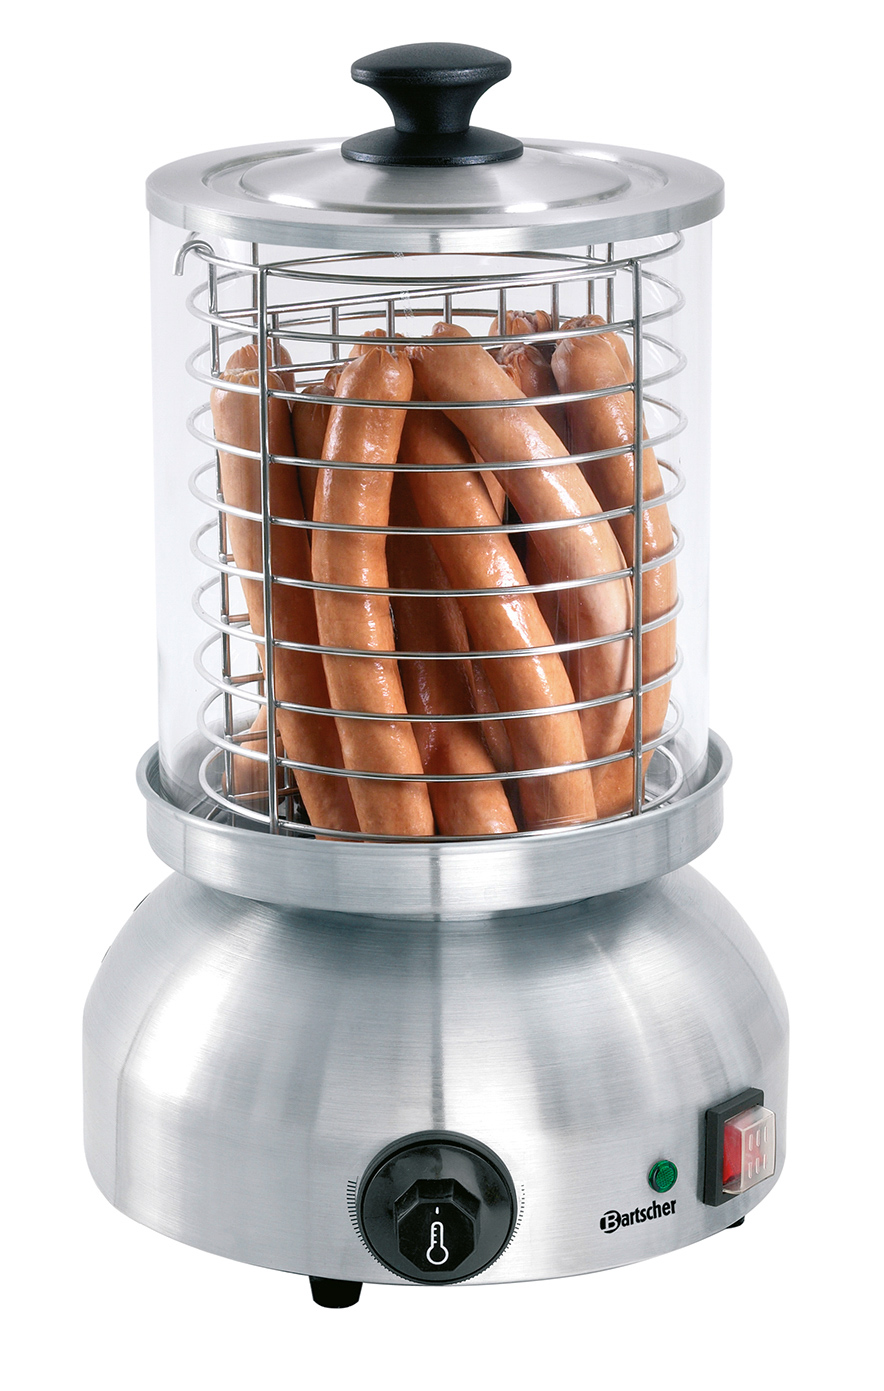 Bartscher Hot-Dog-Gerät, rund | Eigenschaften: Wassertank: Edelstahl, Inhalt: 1,25 Liter | Maße: 29,5 x 29,5 x 415 cm. Gewicht: 4,8 kg